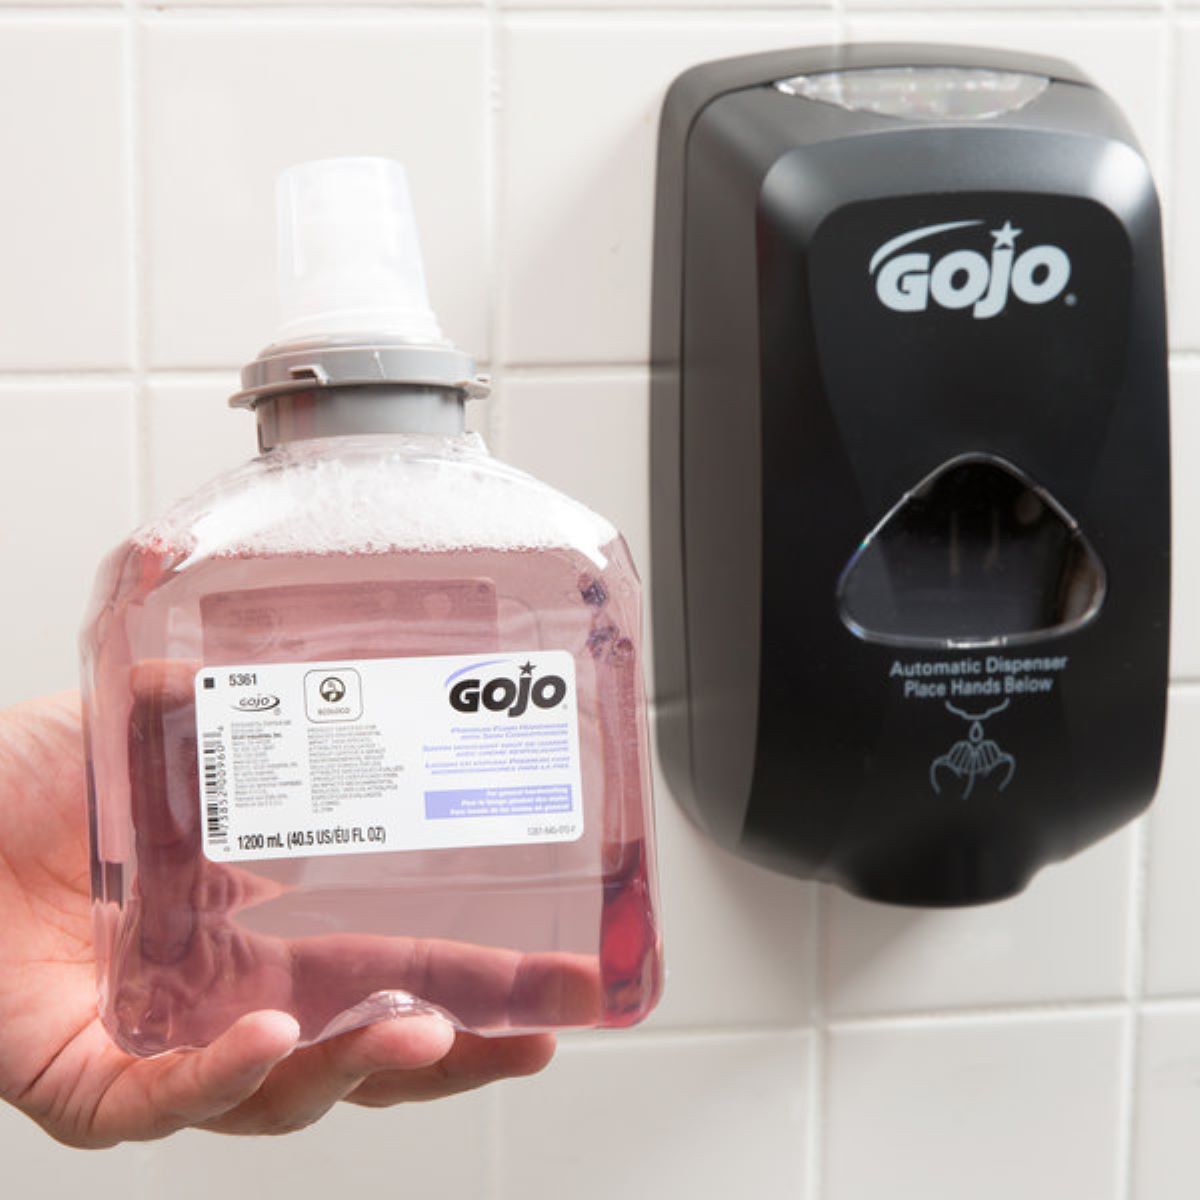 How To Change Soap In Gojo Soap Dispenser